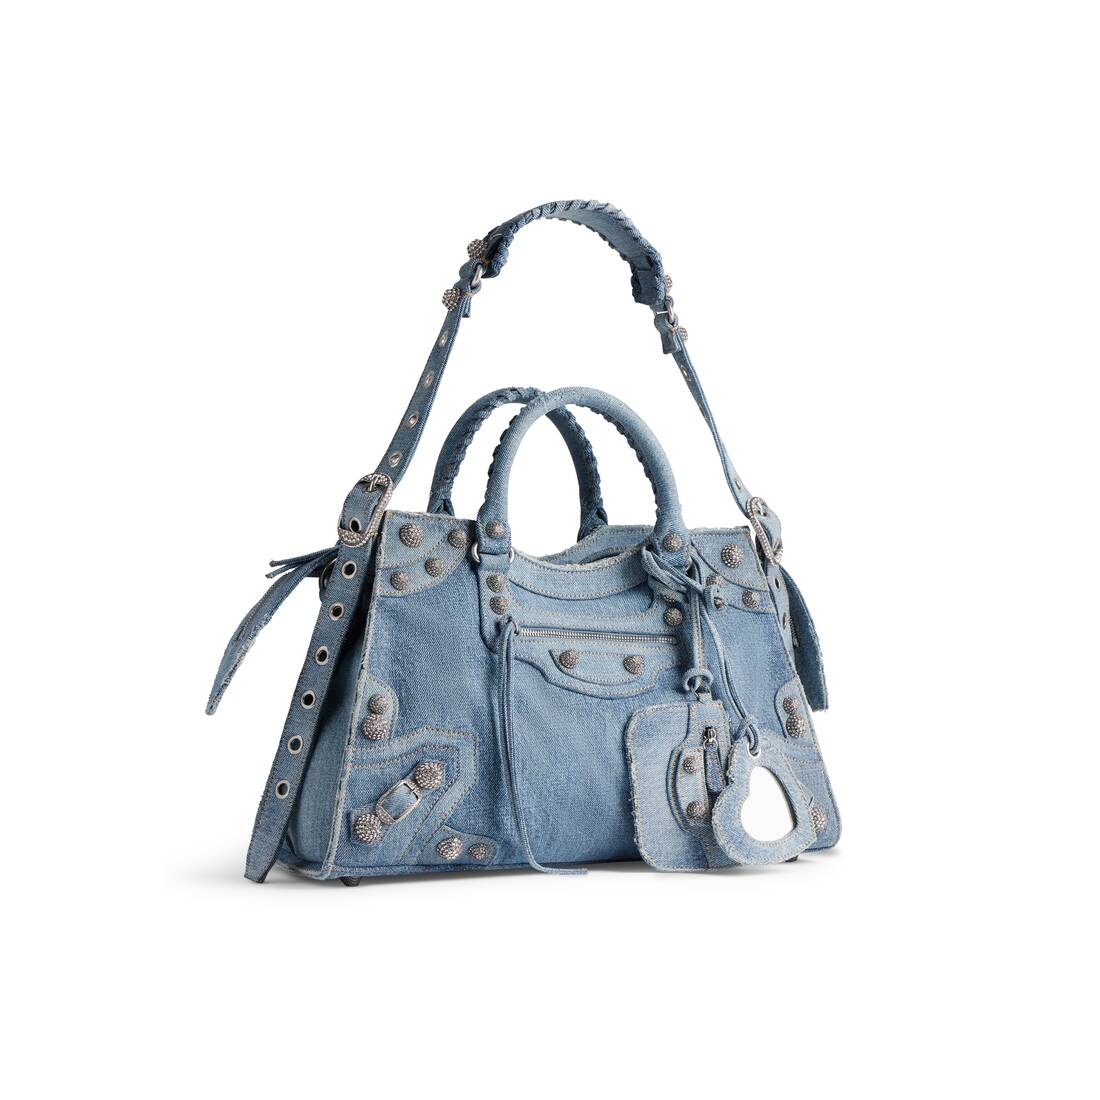 Balenciaga  Bags  Balenciaga City Bag In A Beautiful Blue Color  Poshmark